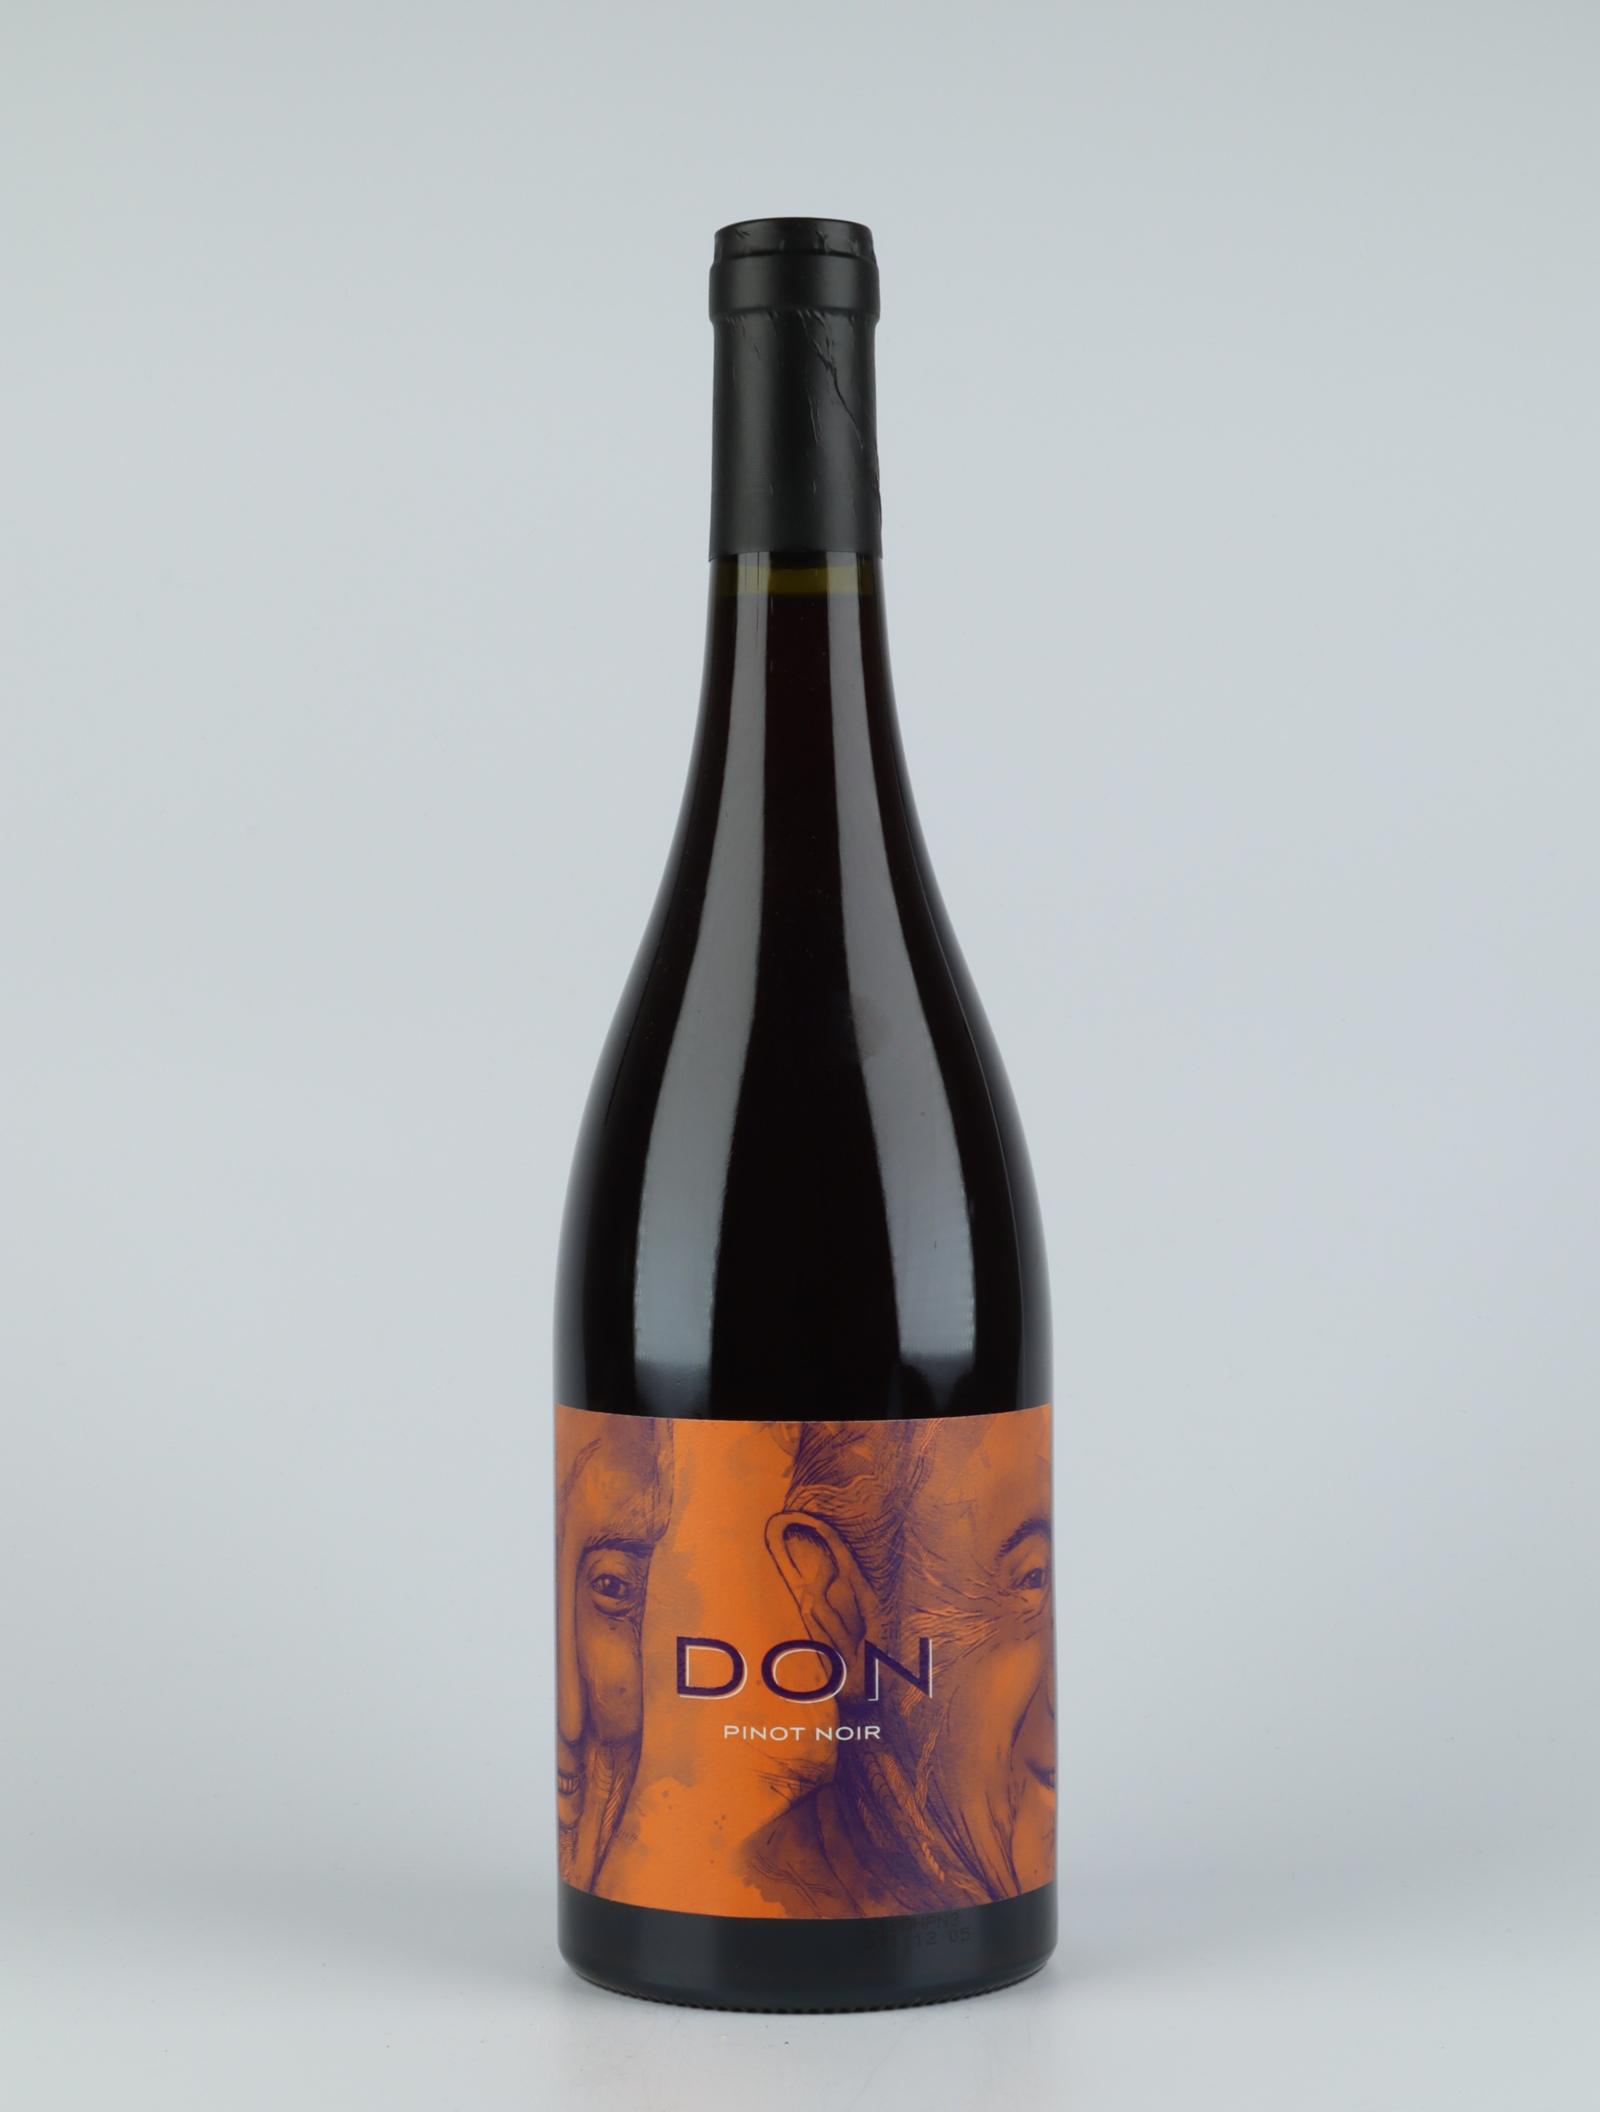 En flaske 2018 Pinot Noir Rødvin fra Don, Nelson i New Zealand